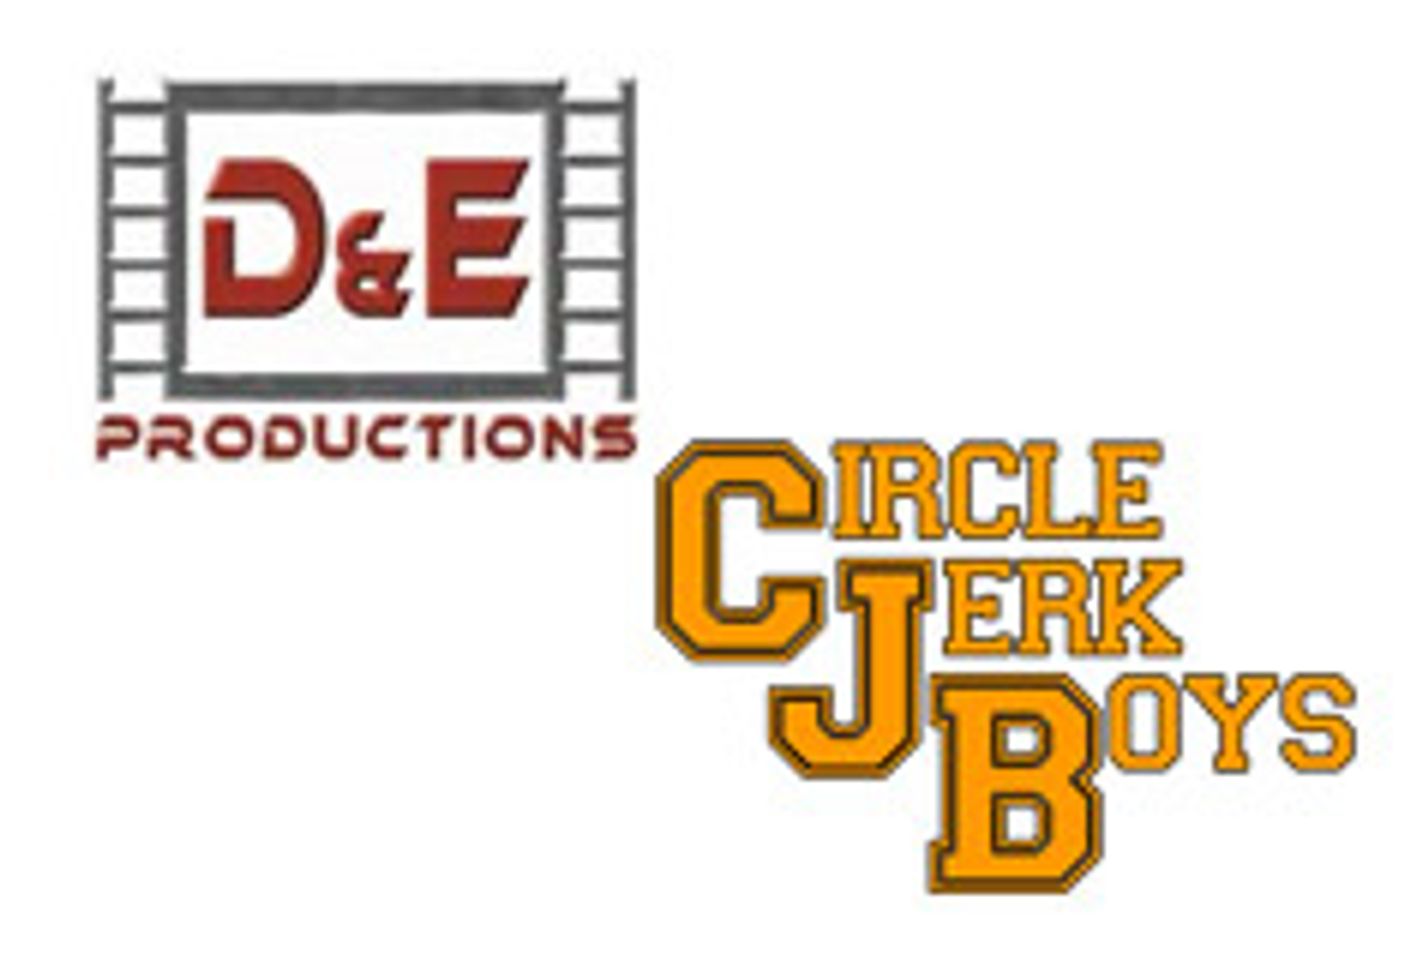 D&E to Market, Distribute Pride Studios